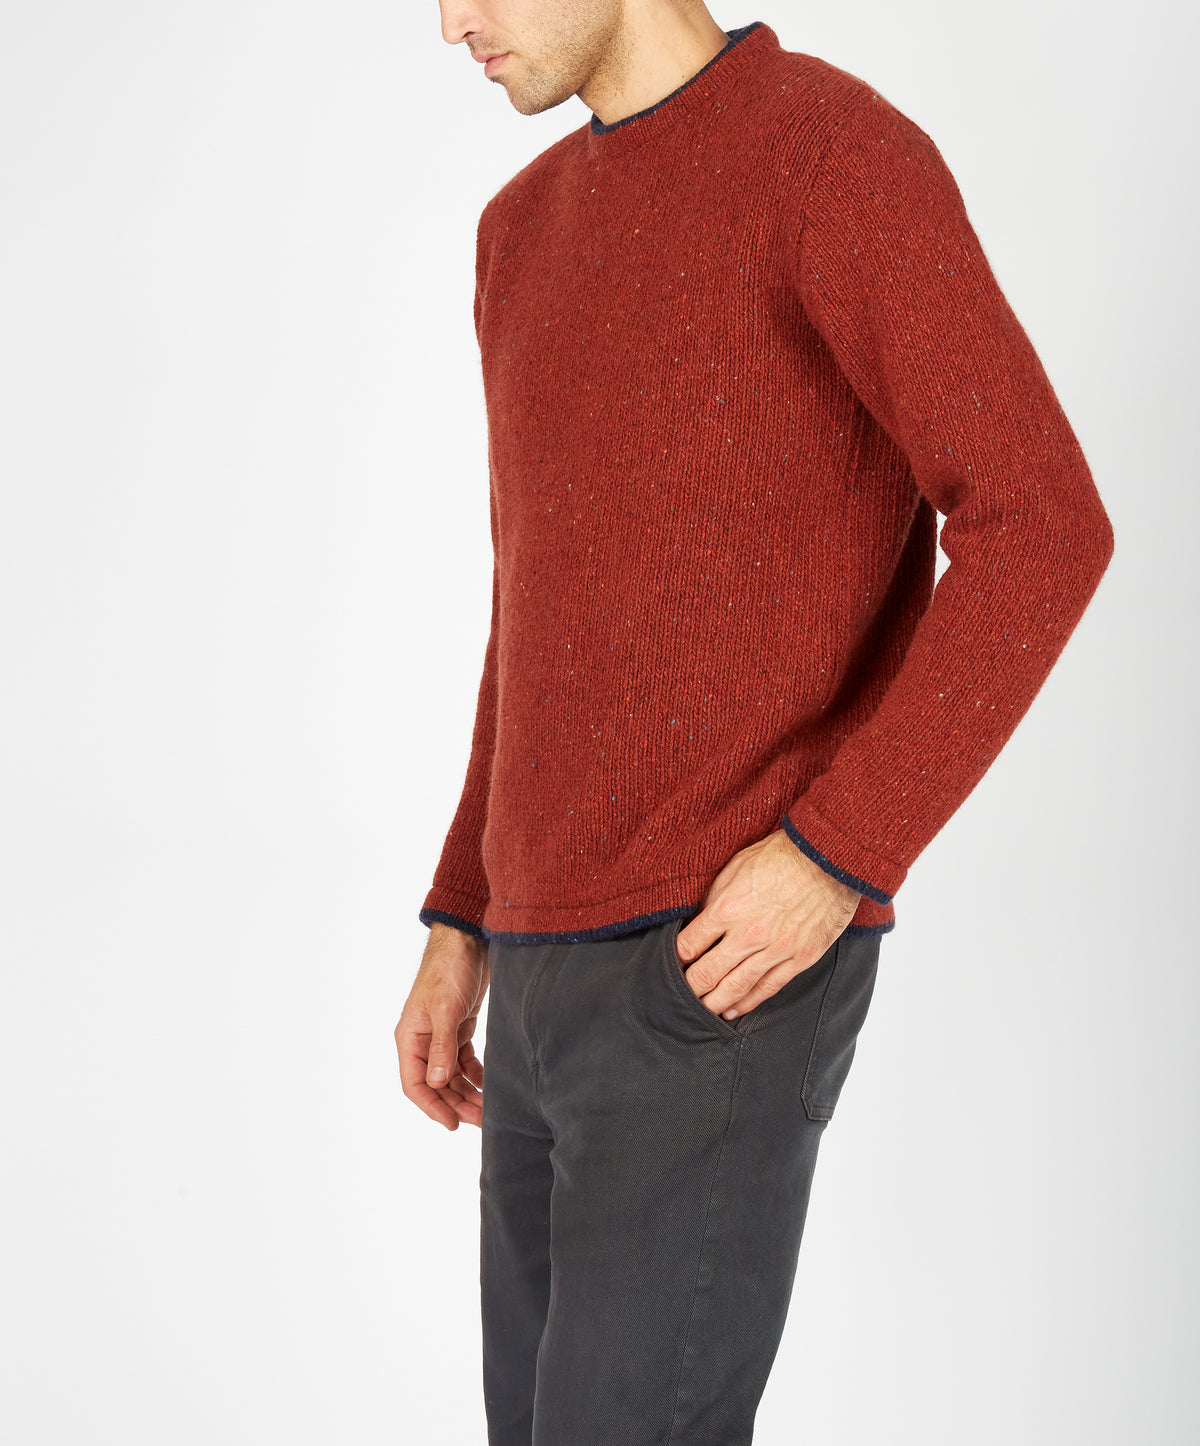 IrelandsEye Knitwear Roundstone Sweater Copper Marl